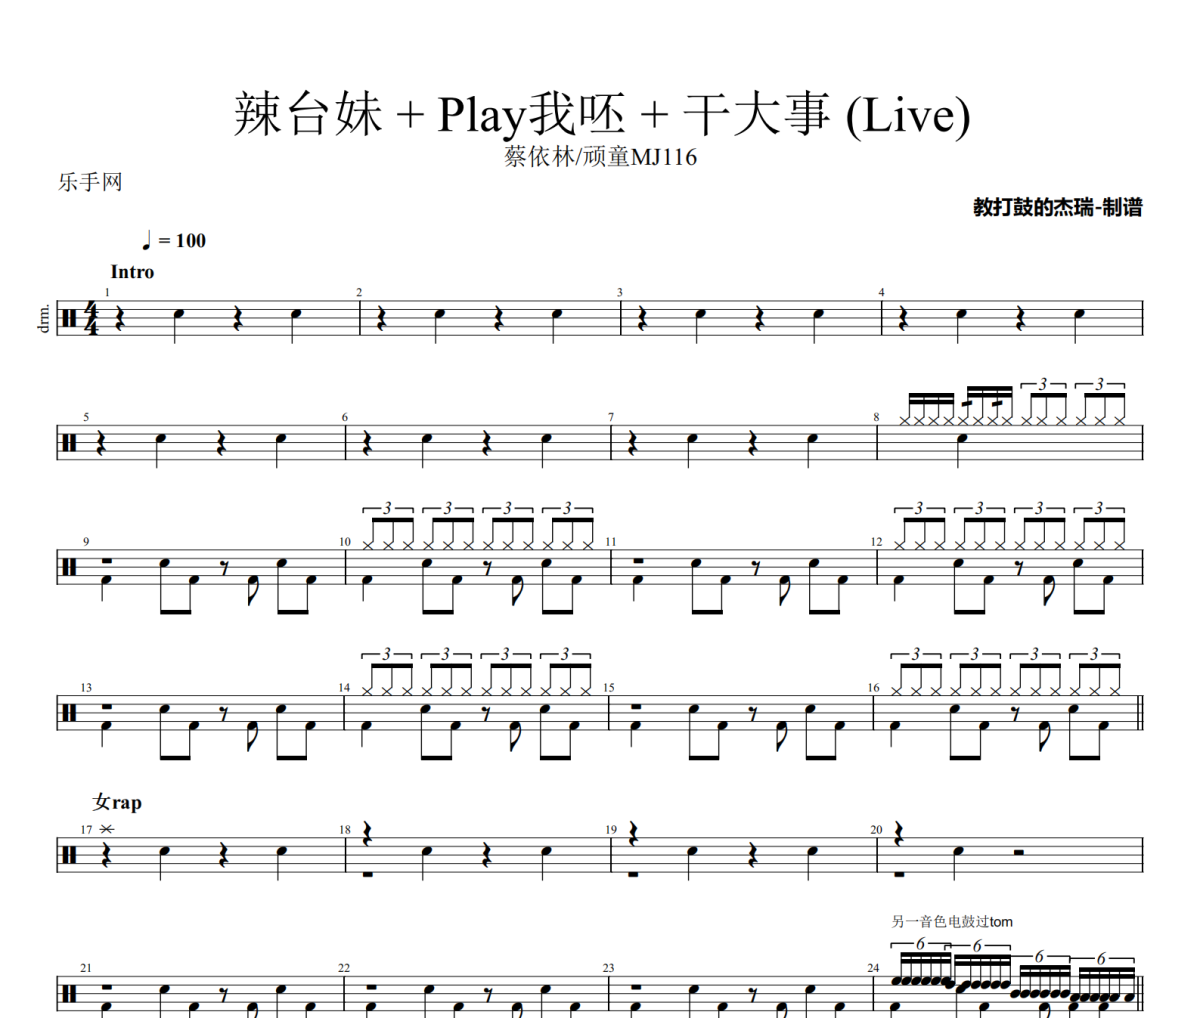 蔡依林/顽童MJ116-辣台妹 + Play我呸 + 干大事(Live)架子鼓|爵士鼓|鼓谱